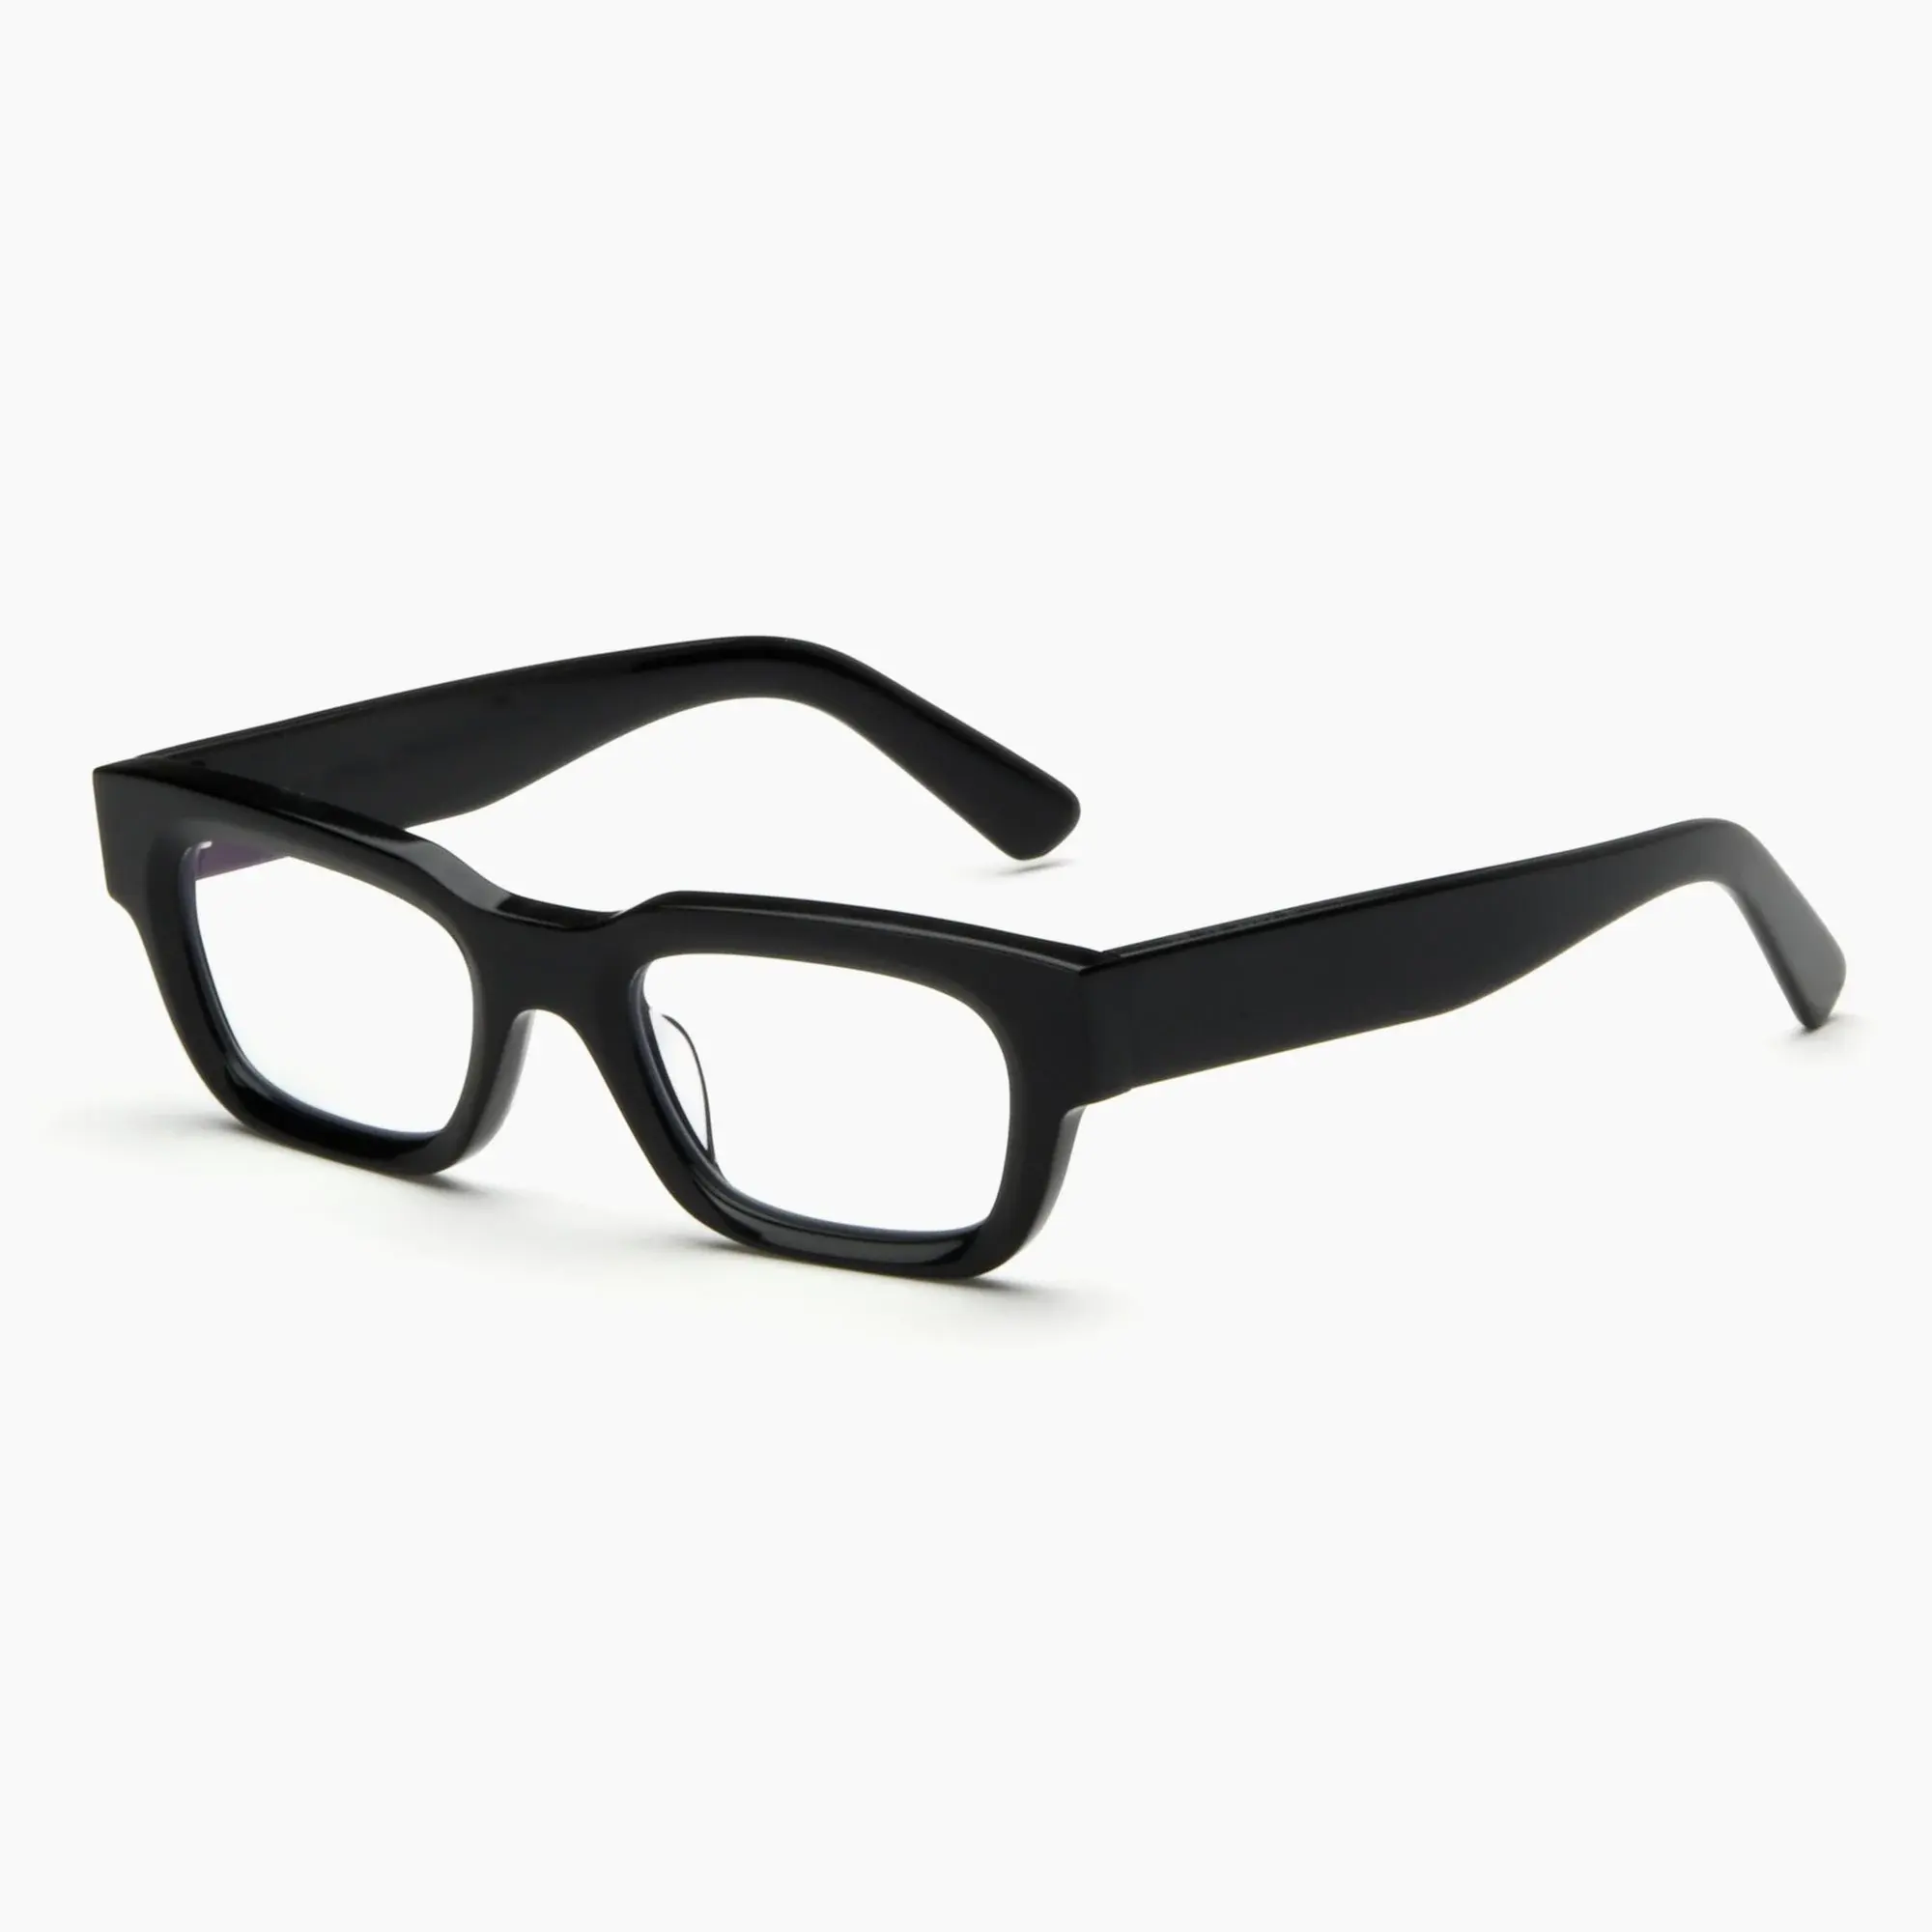 新しいファッション眼鏡フレーム厚いアセテートメガネ高品質タイプヨーロッパとアメリカンスタイルの眼鏡フレームカスタムレンズ